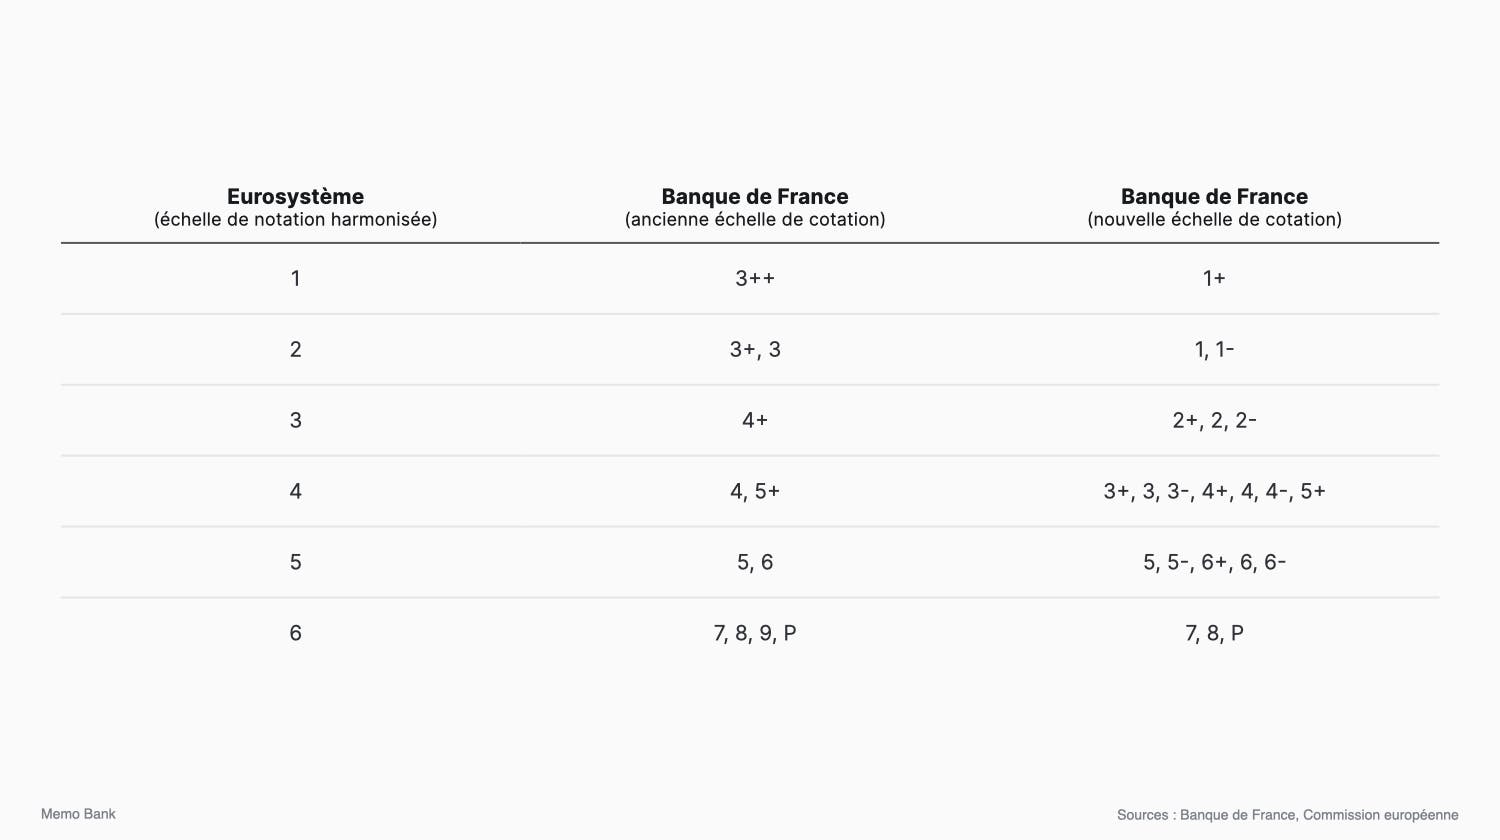 Table de correspondance entre l’échelle de notation harmonisée de l’Eurosystème et les échelles de notation de la Banque de France.